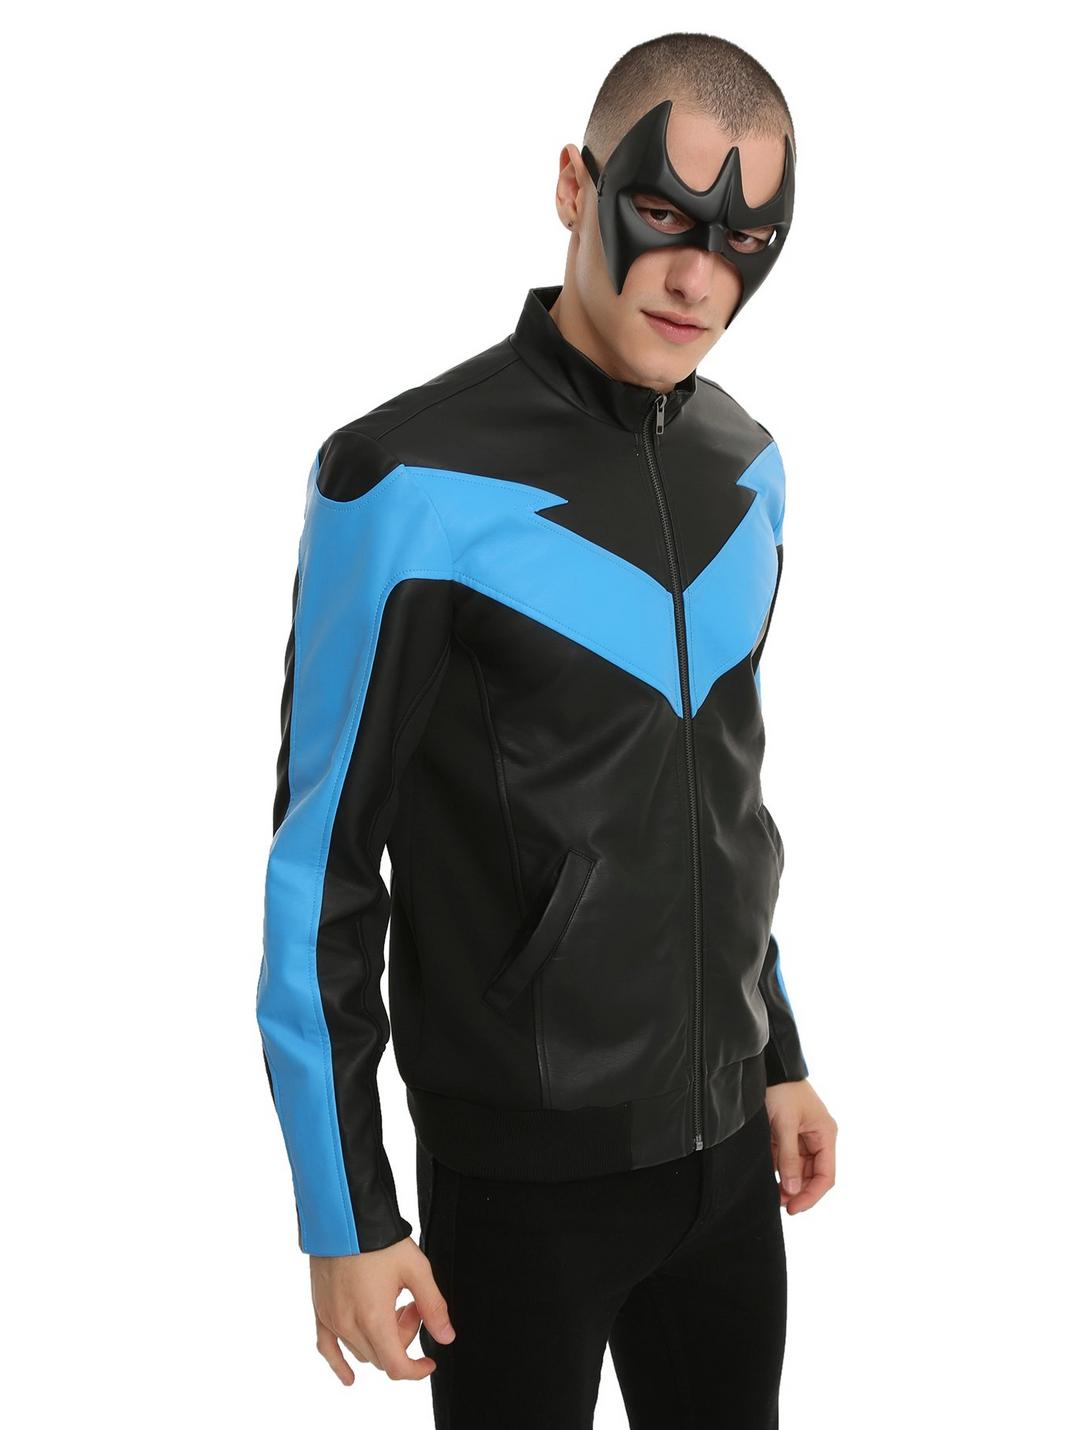 nightwing cosplay hoodie